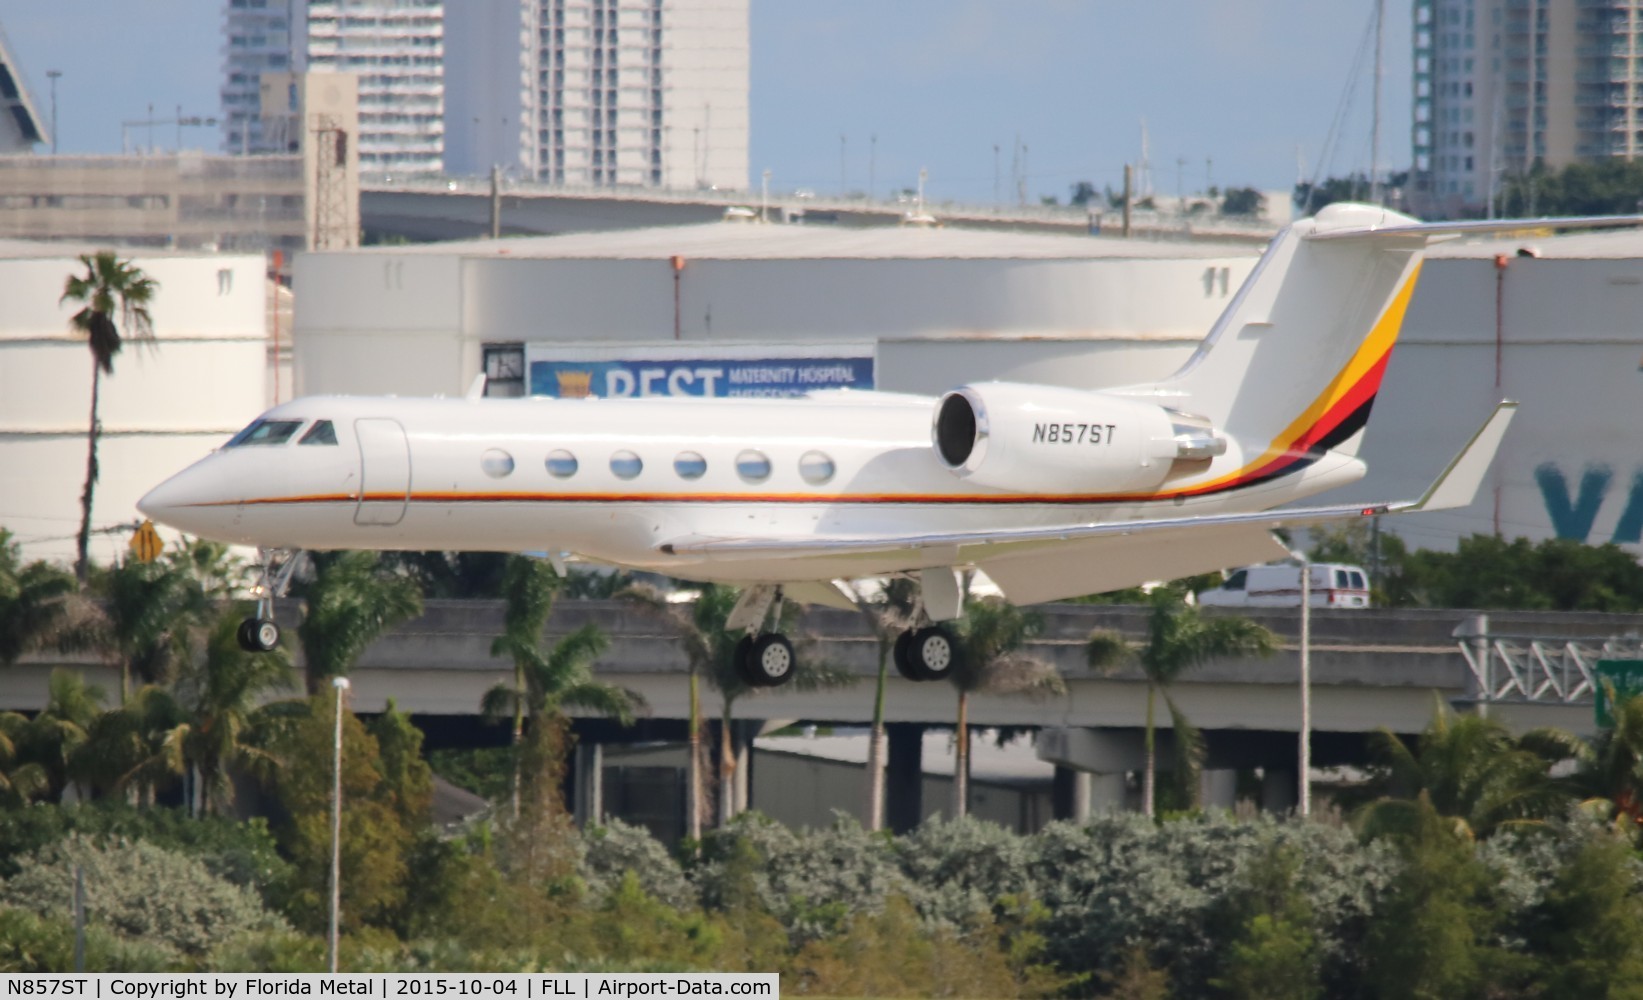 N857ST, 1998 Gulfstream Aerospace G-IV C/N 1345, Seminole Tribe of Florida